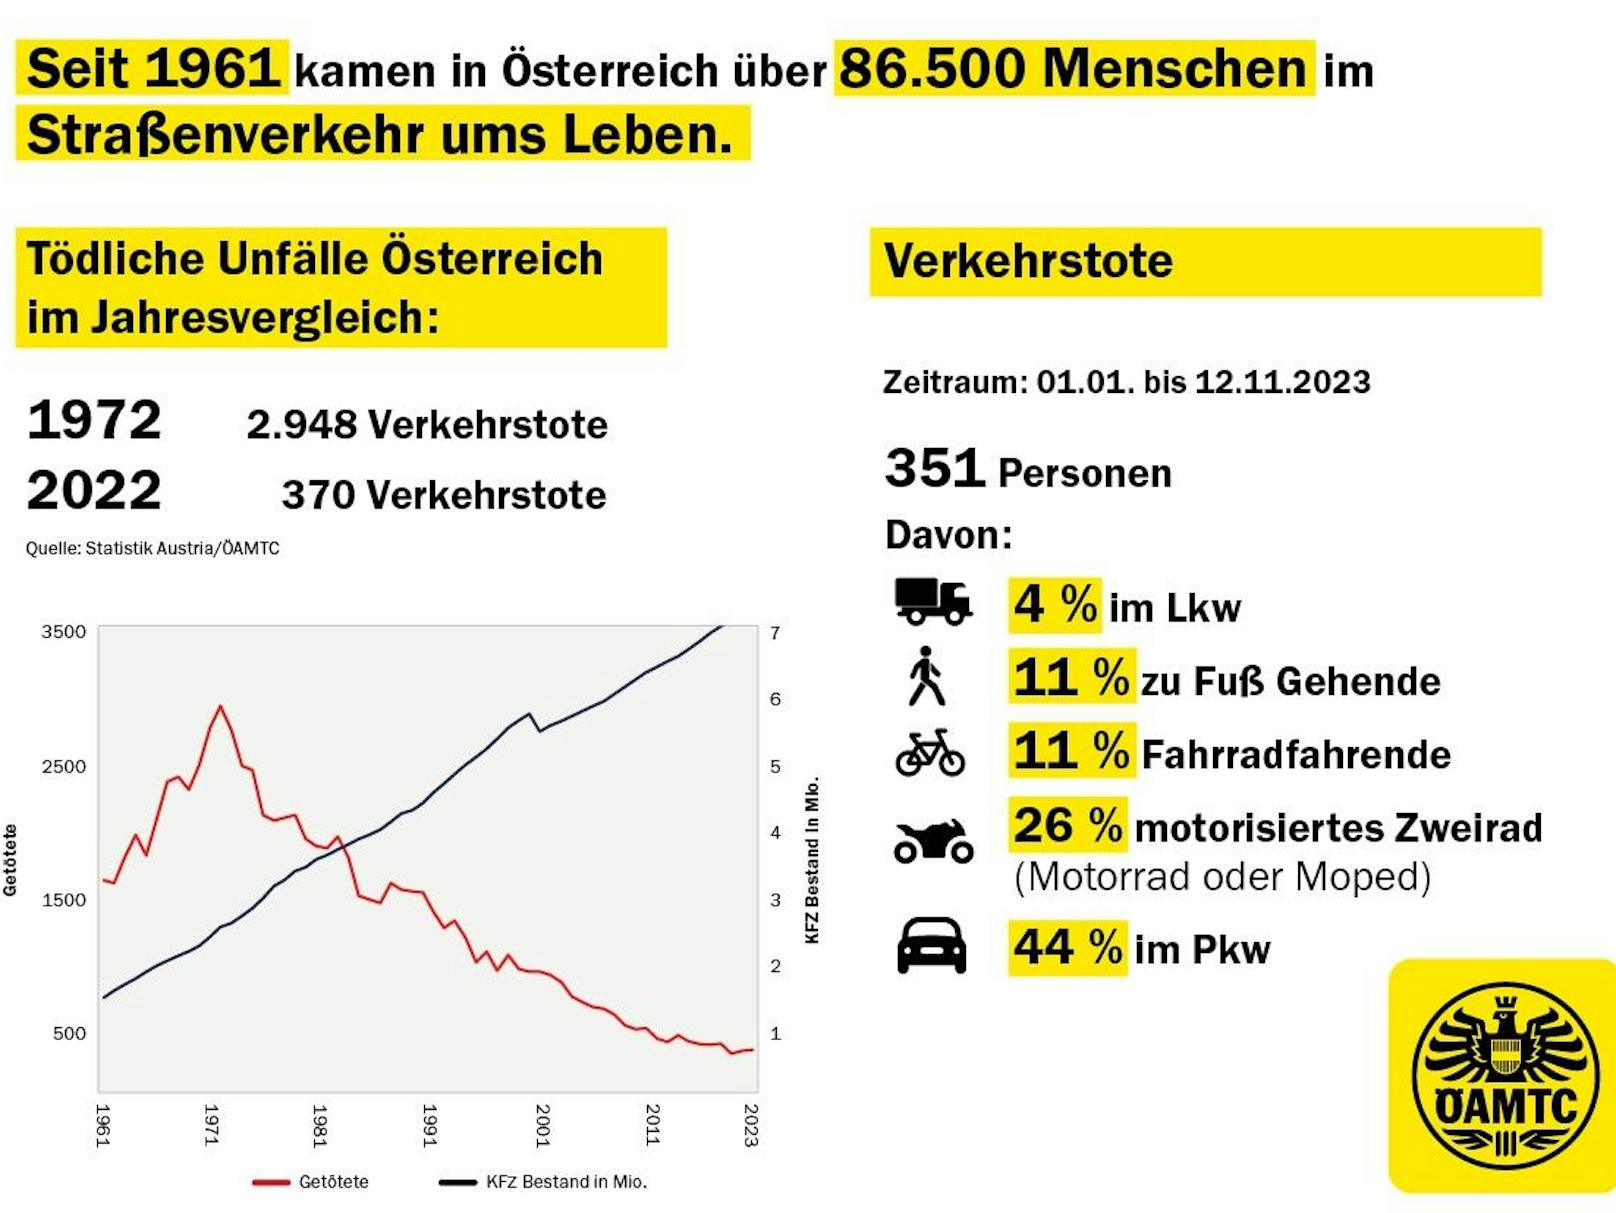 In den vergangenen Jahrzehnten kamen in Österreich bereits über 85.000 Menschen im Straßenverkehr ums Leben.